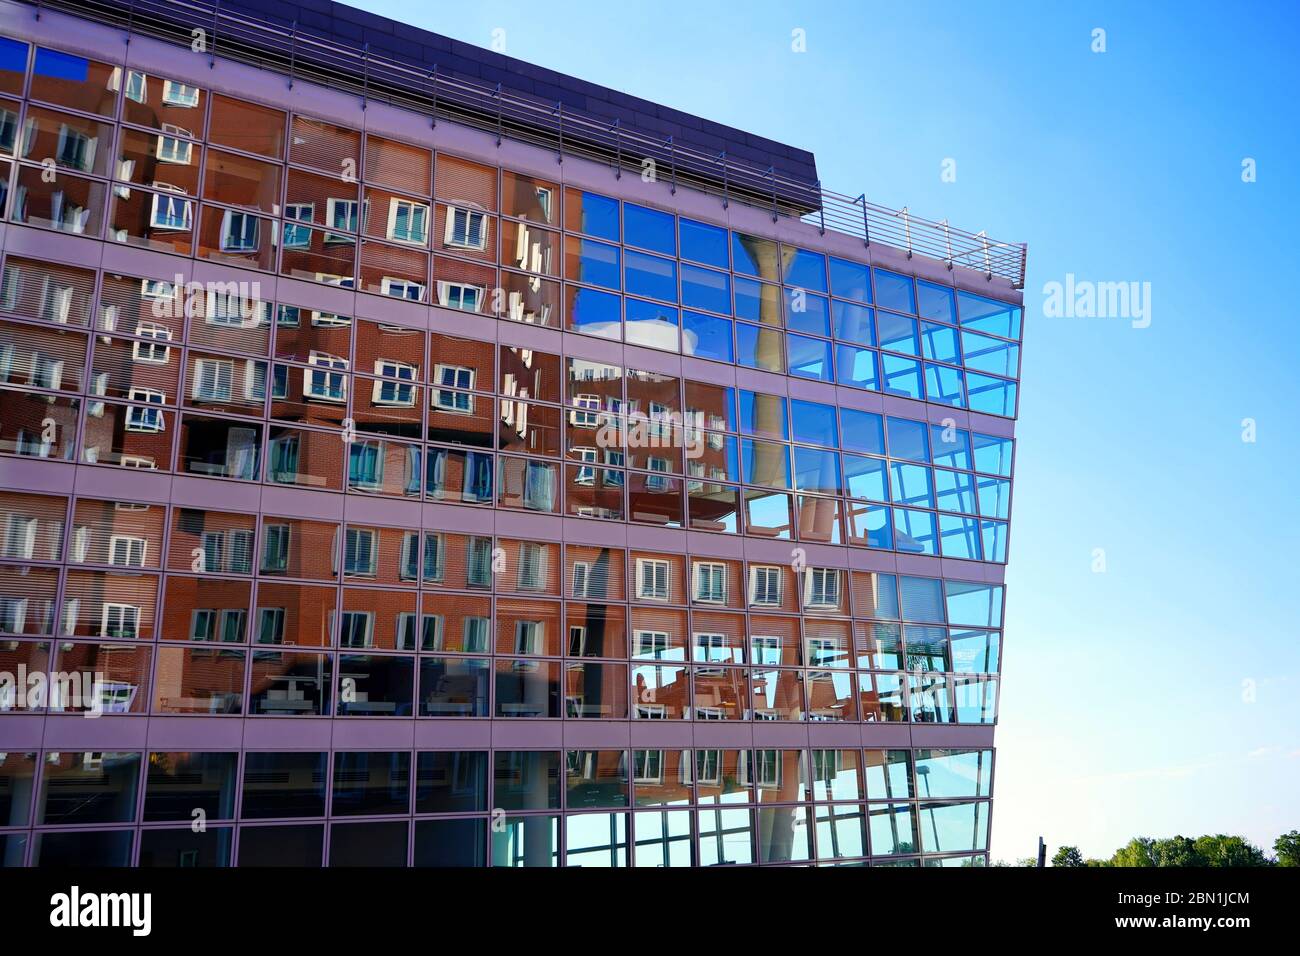 Immeuble de bureaux moderne à Media Harbour/ Medienhafen avec des bâtiments Gehry reflétant dans la façade. Medienhafen est une attraction touristique de Düsseldorf. Banque D'Images